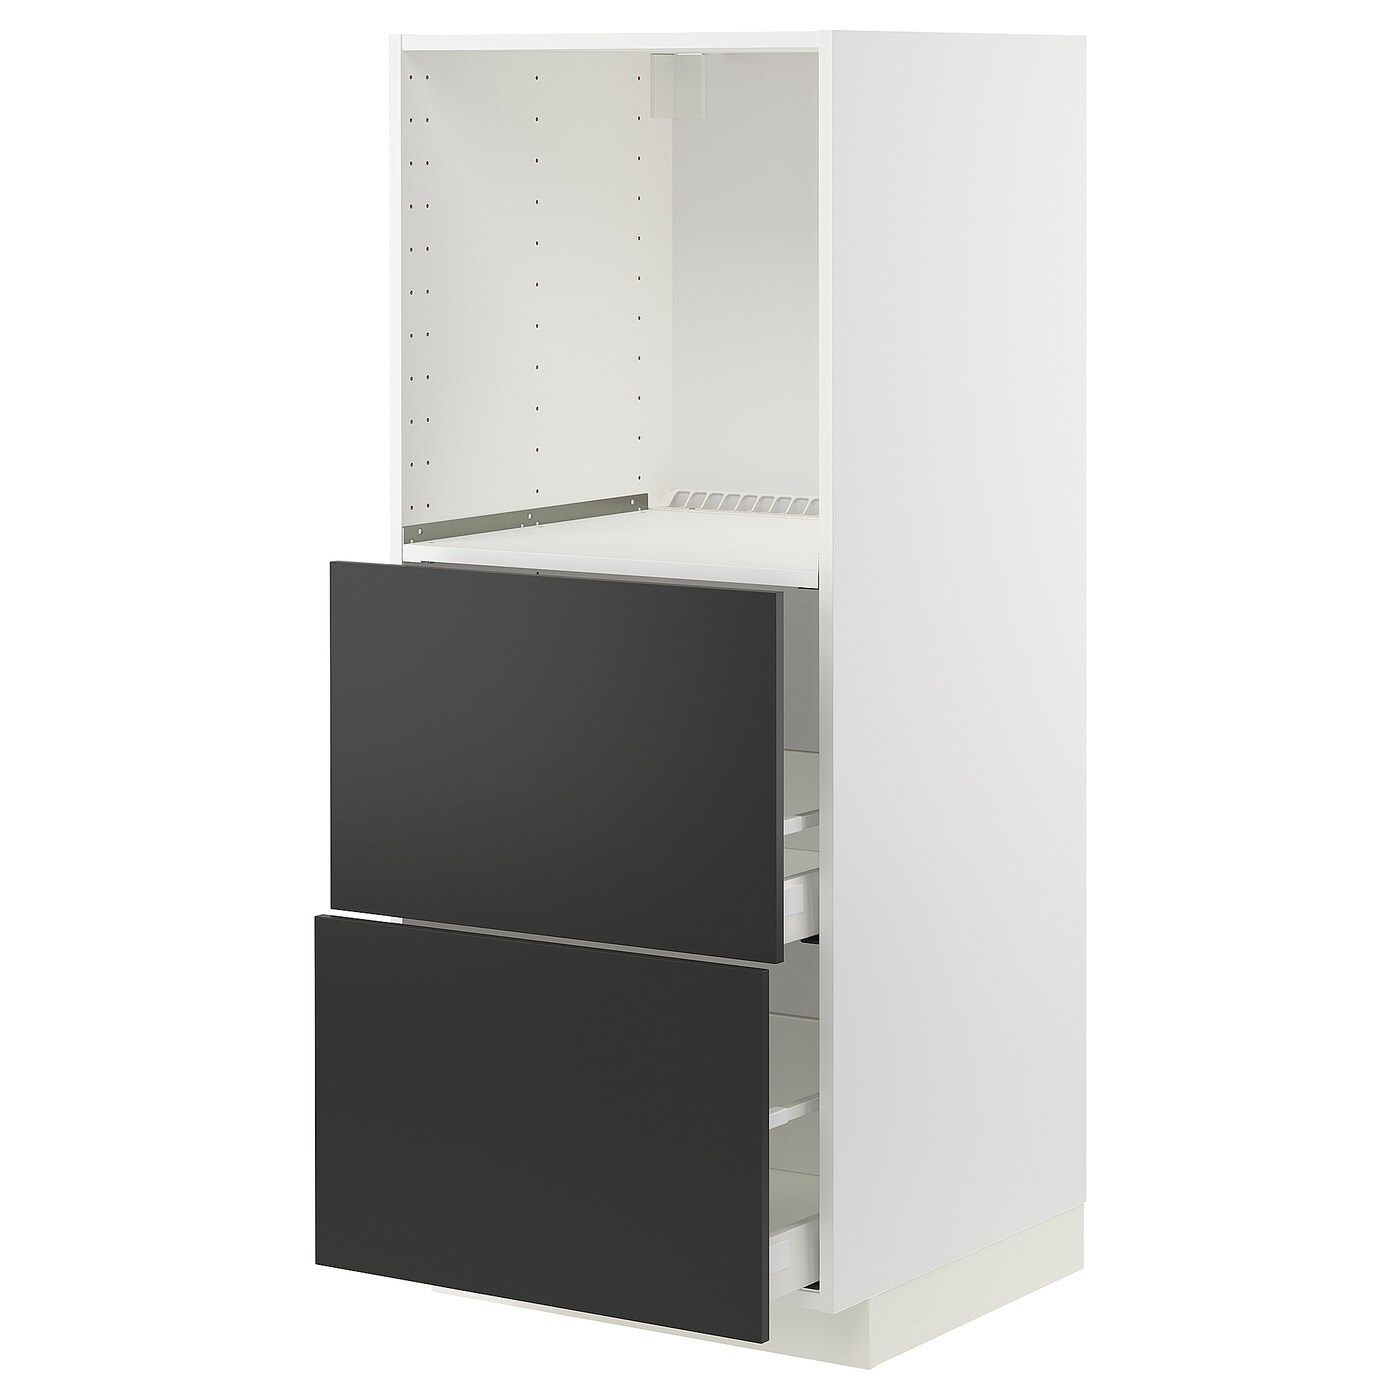 Напольный шкаф  - IKEA METOD MAXIMERA, 148x61,9x60см, белый/черный, МЕТОД МАКСИМЕРА ИКЕА